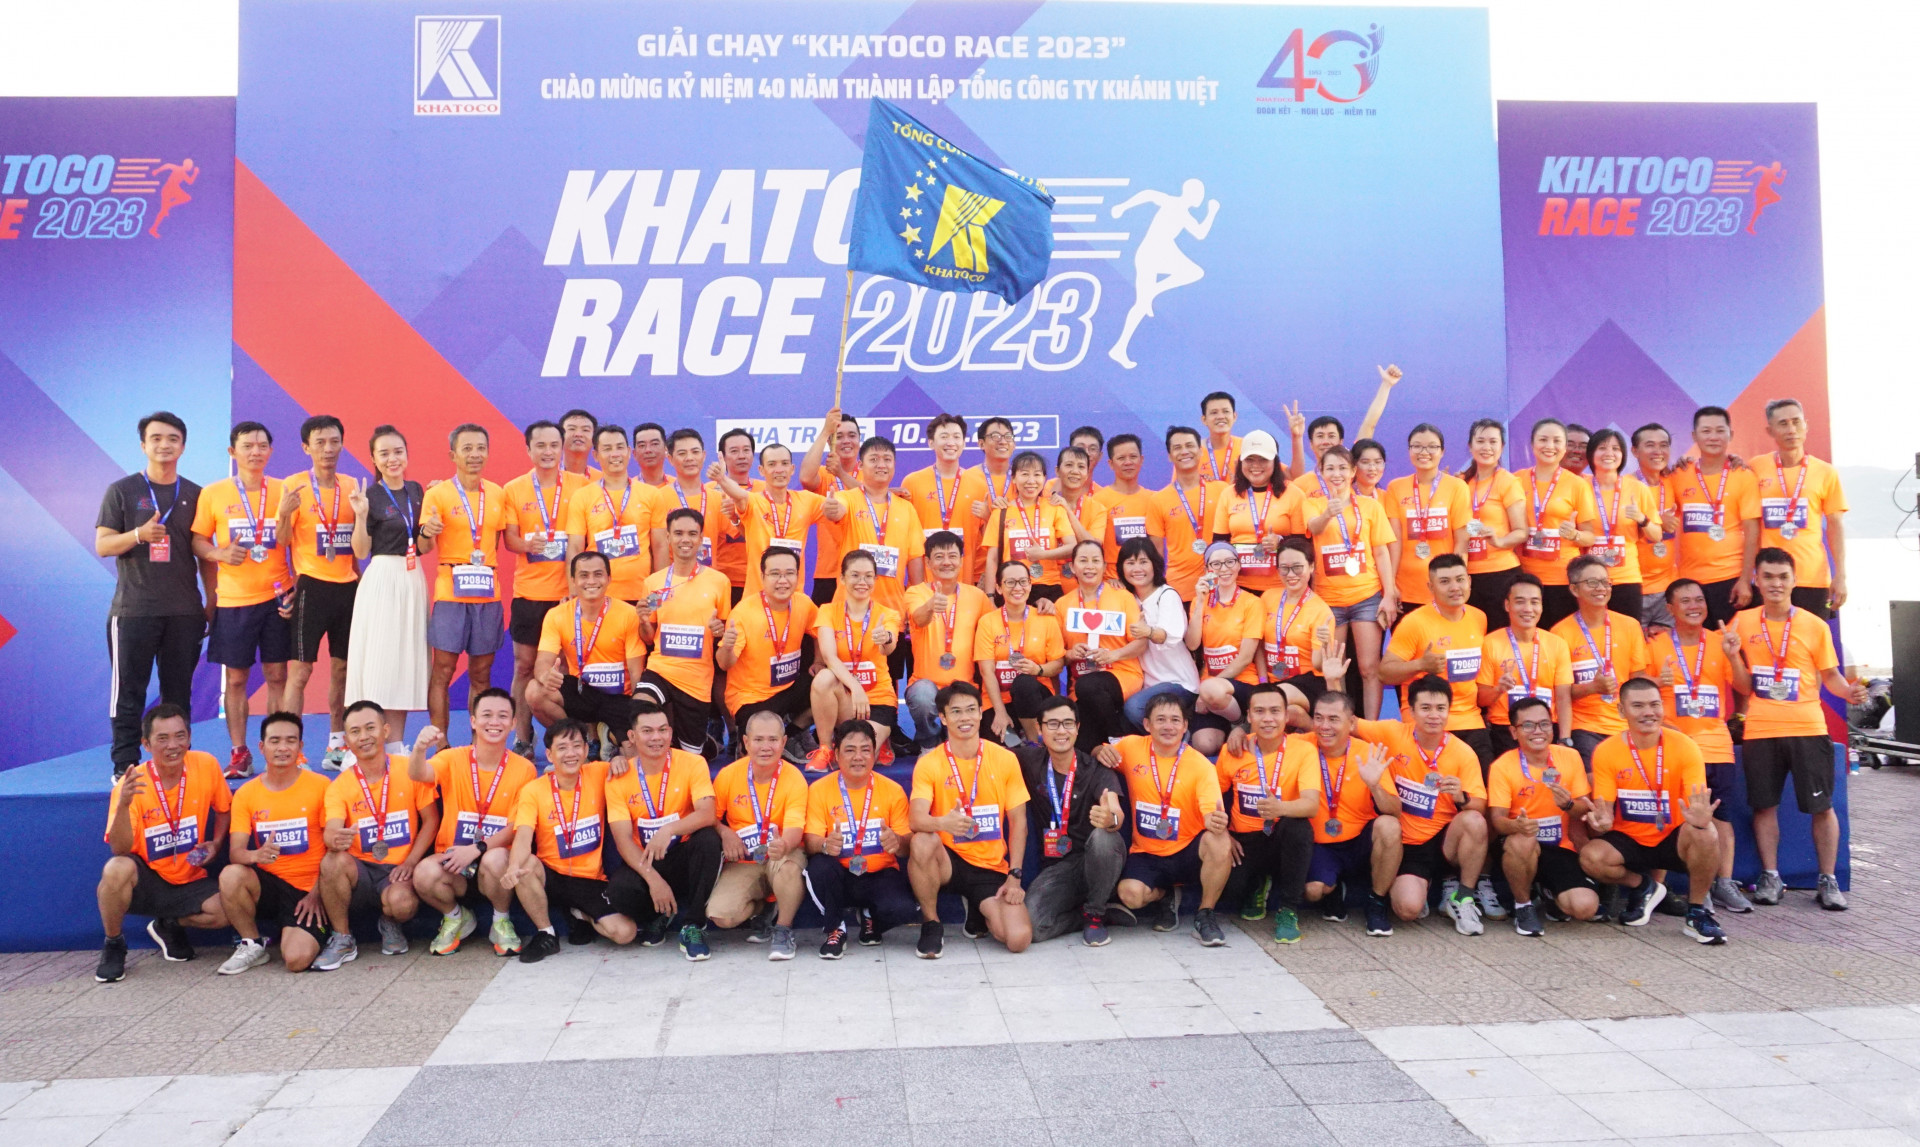 Các vận động viên chụp hình lưu niệm khi tham dự Giải chạy Khatoco Race 2023